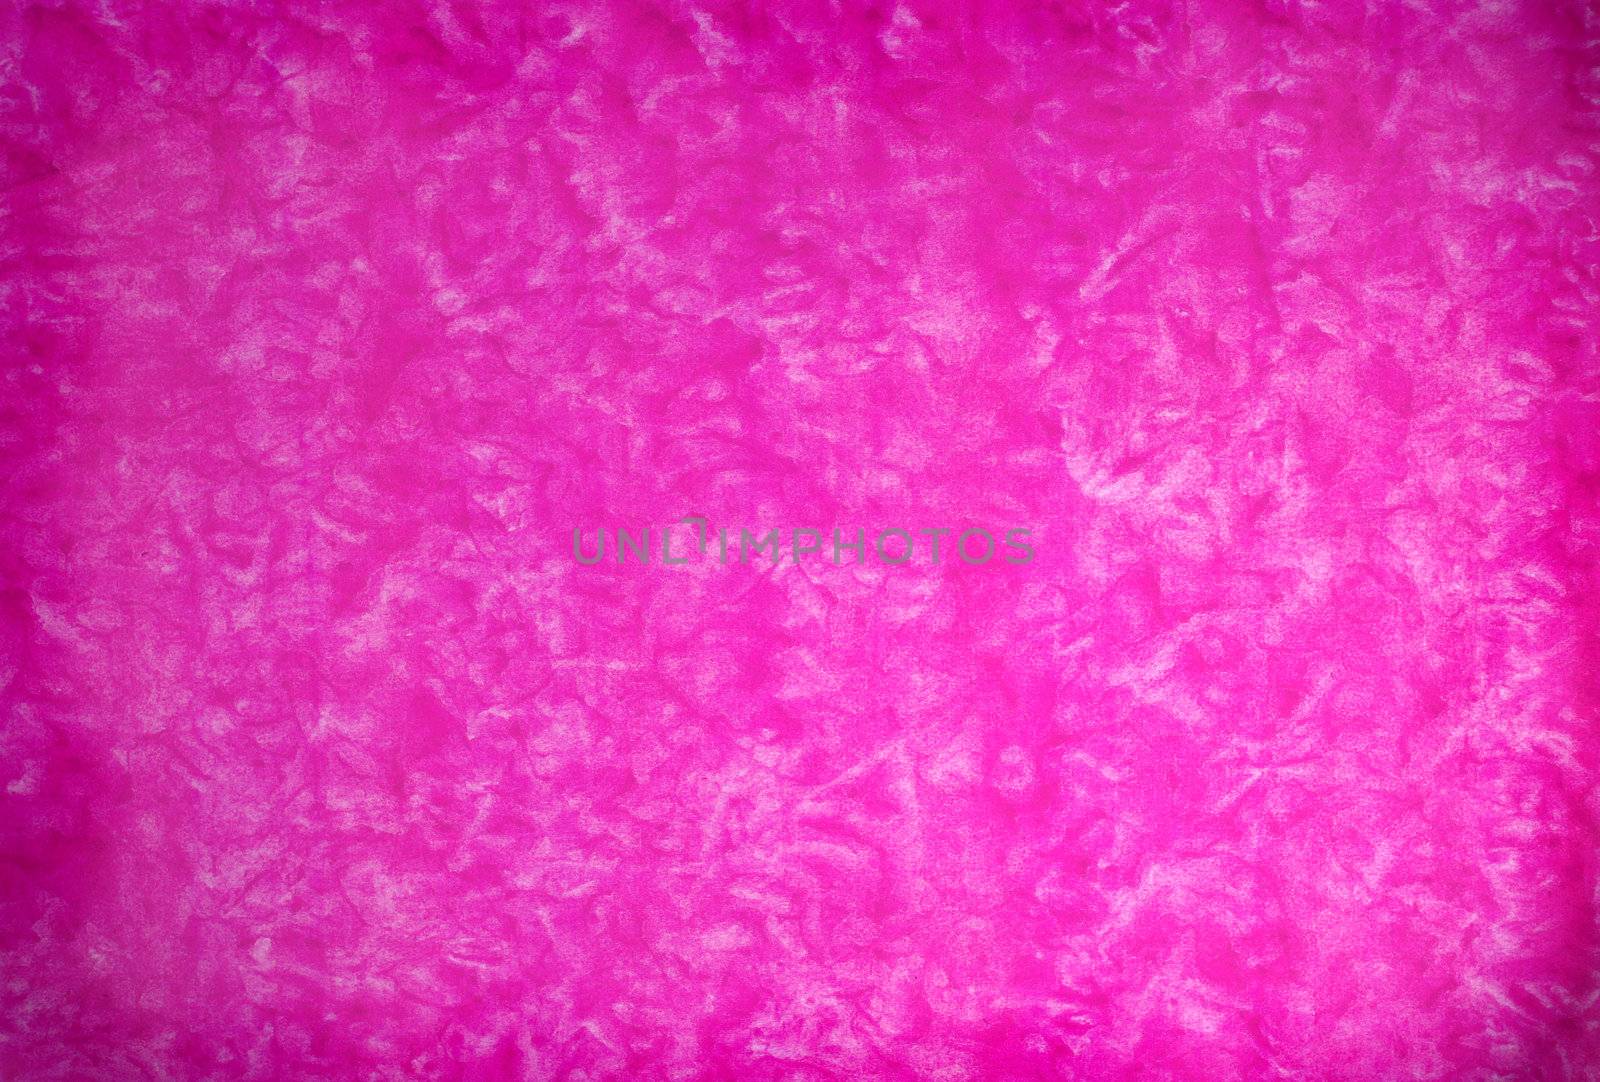 Pink mottled grunge background in variating hues